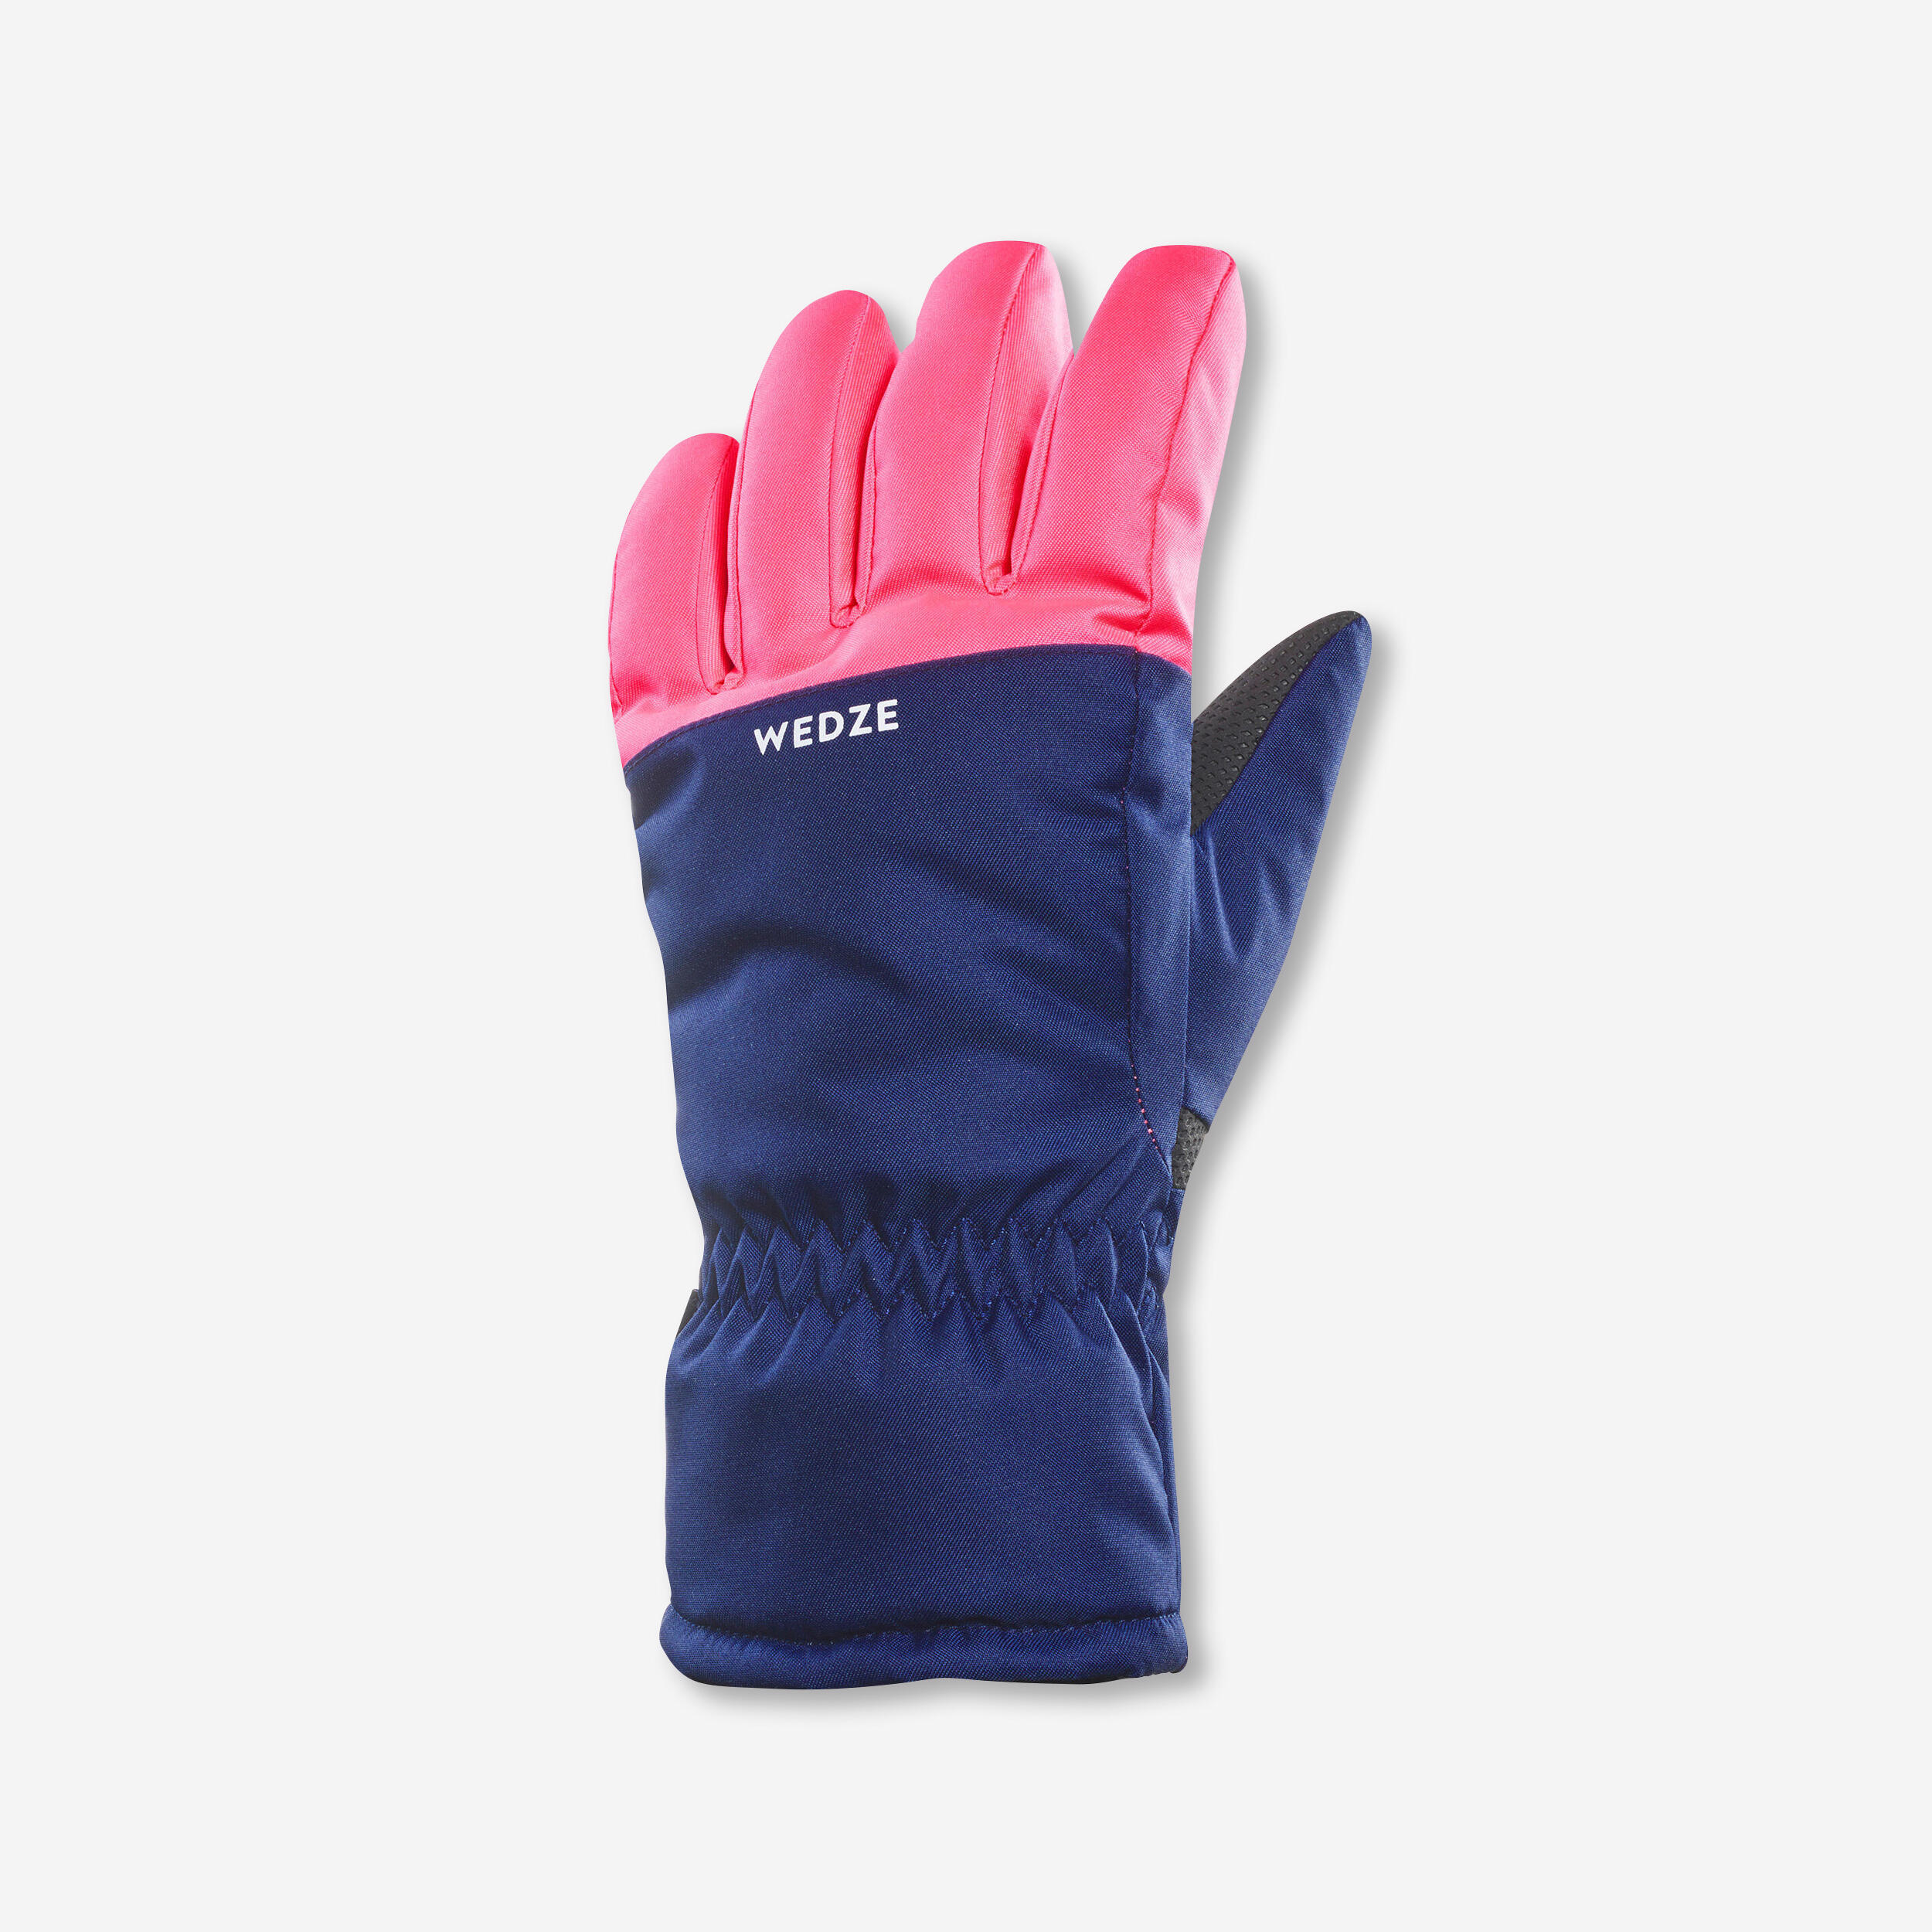 gants de ski chauds et imperméables enfant - 100 bleu et rose fluo - wedze